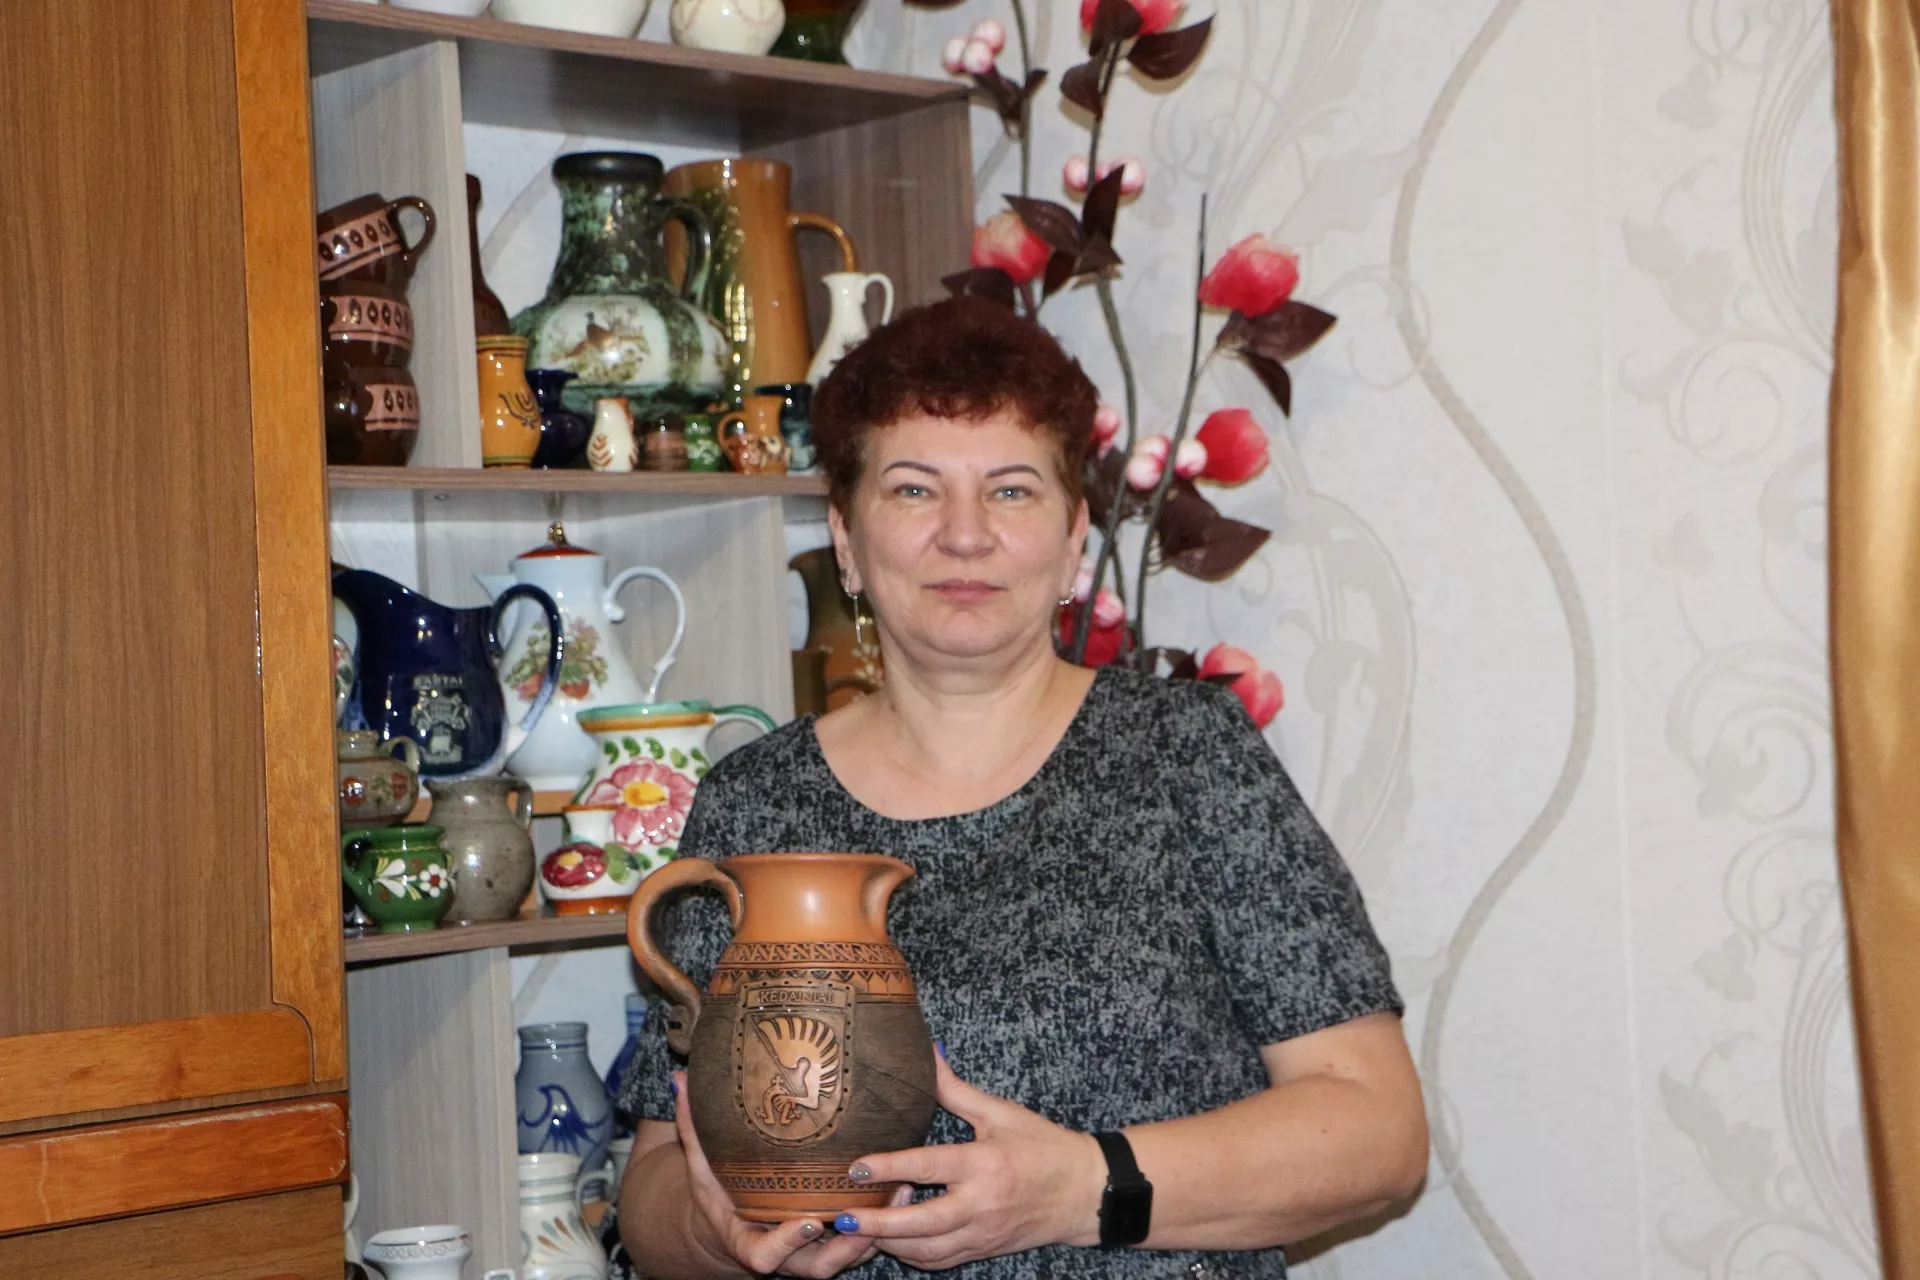  Nuo 1983 metų Beinaičiuose gyvenanti Rima Milašauskienė iš Panevėžio rajono į kaimą su tėvais atsikraustė būdama aštuntokė. / Džestinos Borodinaitės nuotr.